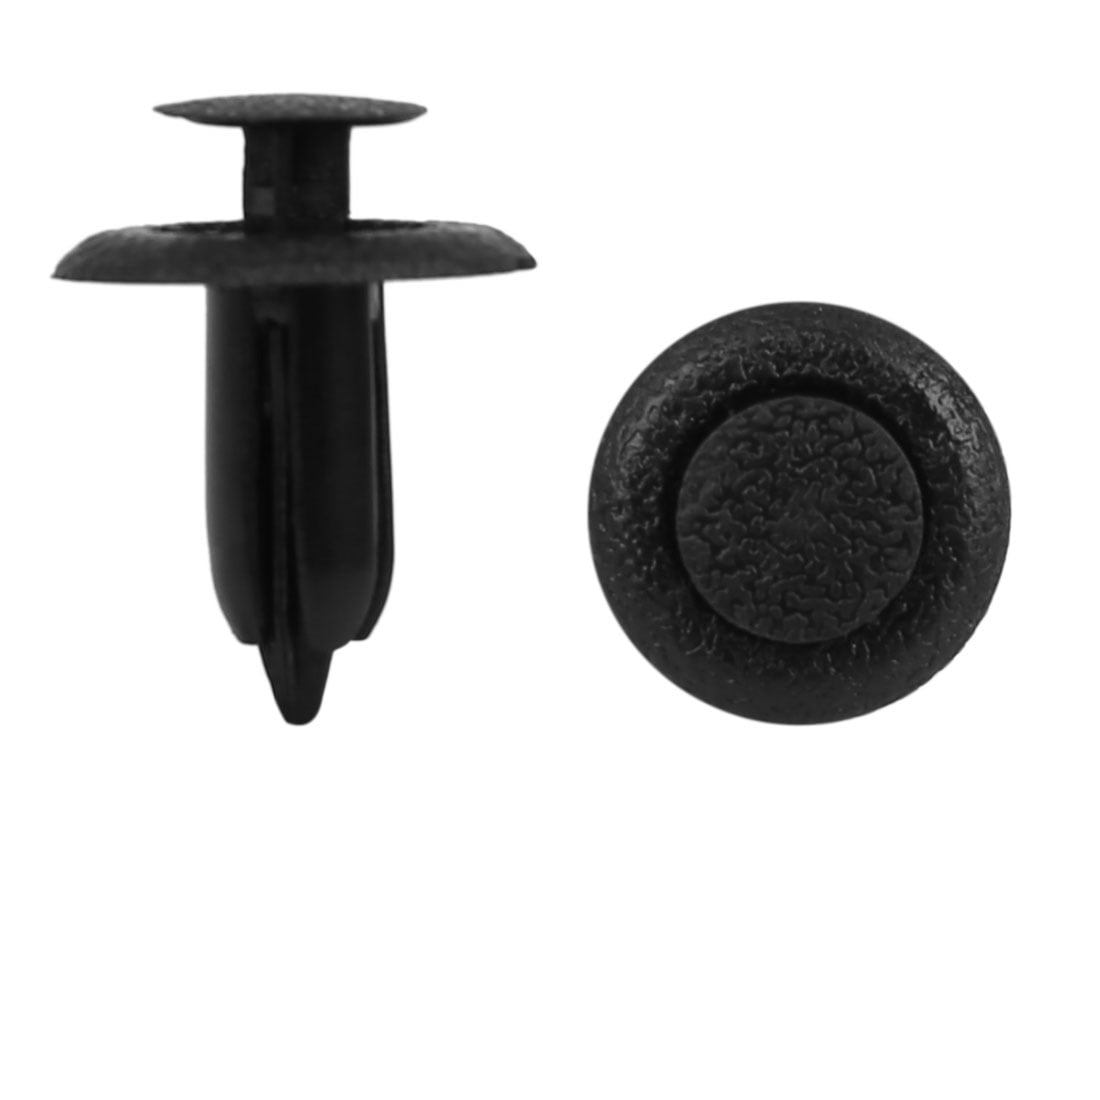 6.5mm Rivet plastique bouton poussoir attache retenue panneau Pour Mazda 8pcs